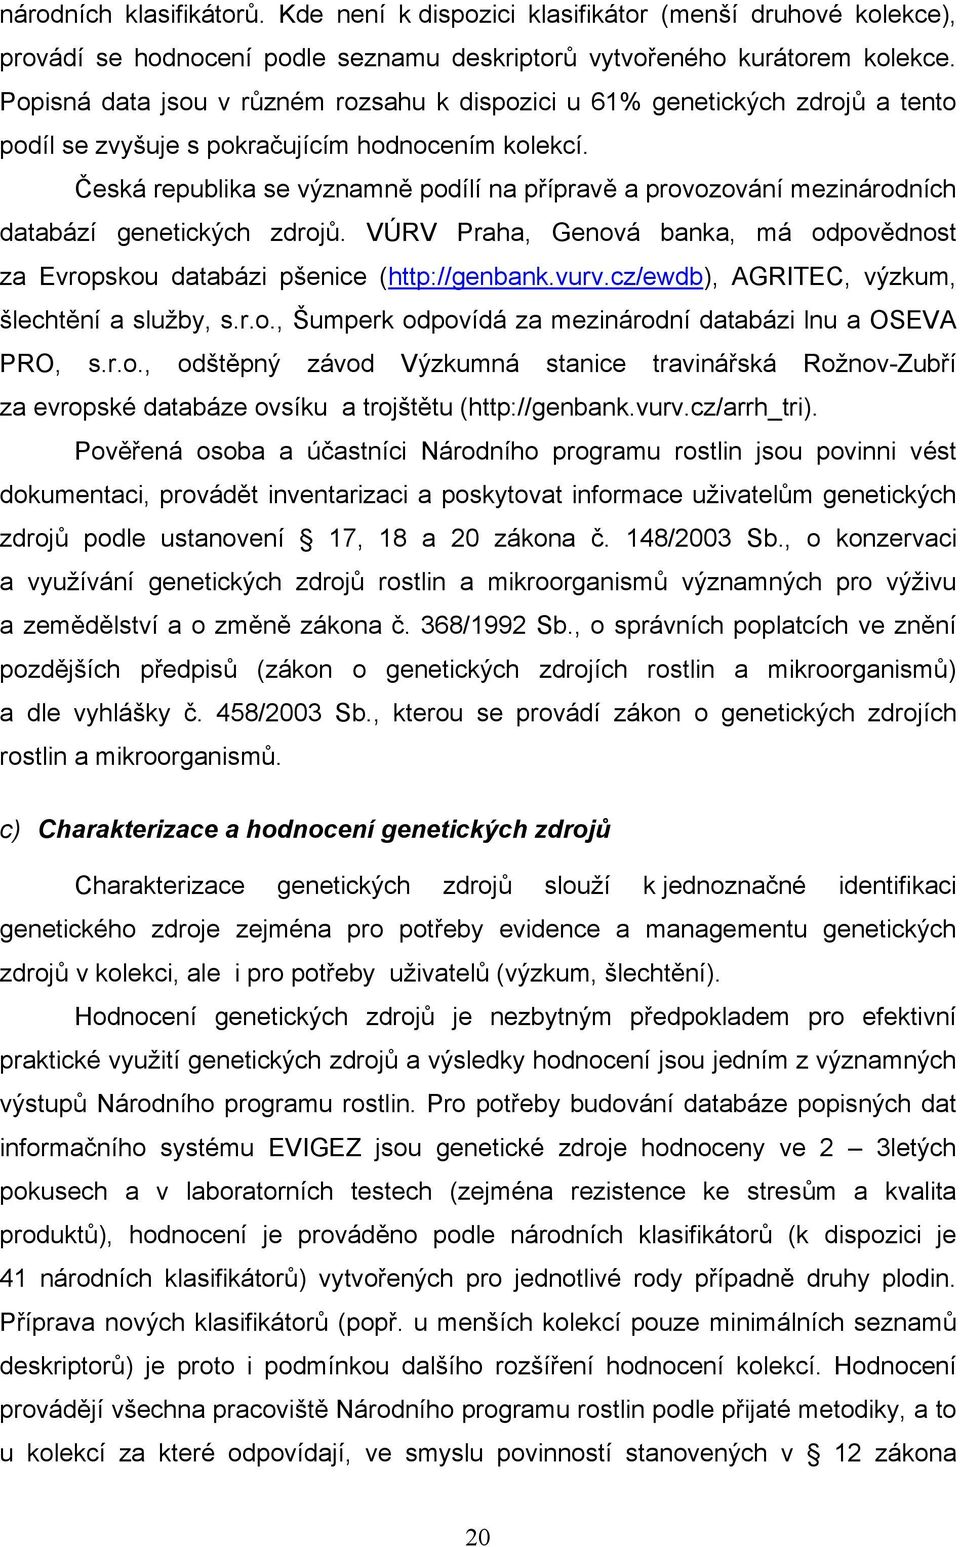 Česká republika se významně podílí na přípravě a provozování mezinárodních databází genetických zdrojů. VÚRV Praha, Genová banka, má odpovědnost za Evropskou databázi pšenice (http://genbank.vurv.